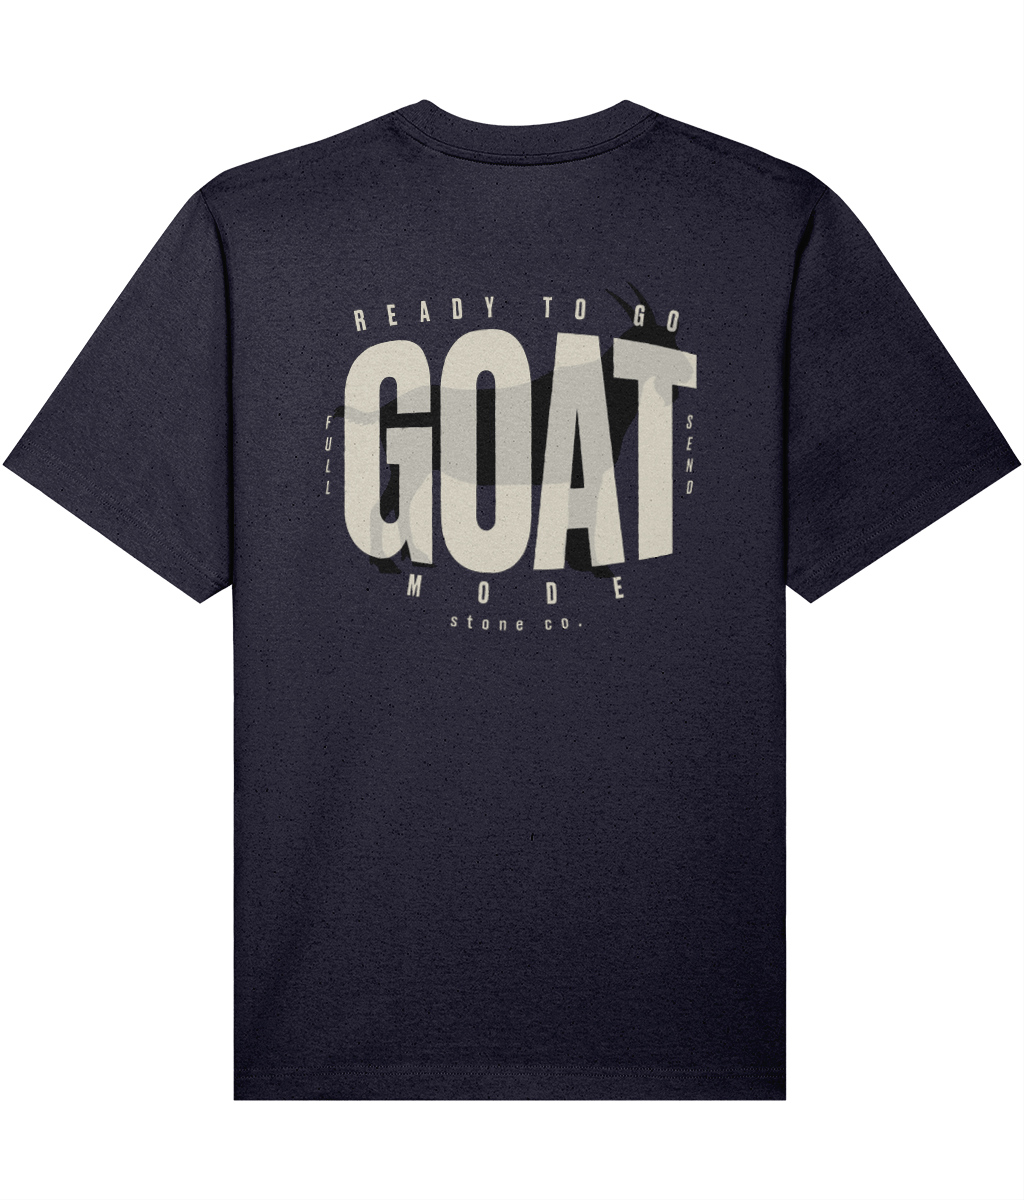 Goat mode (subtle) oversized t-shirt